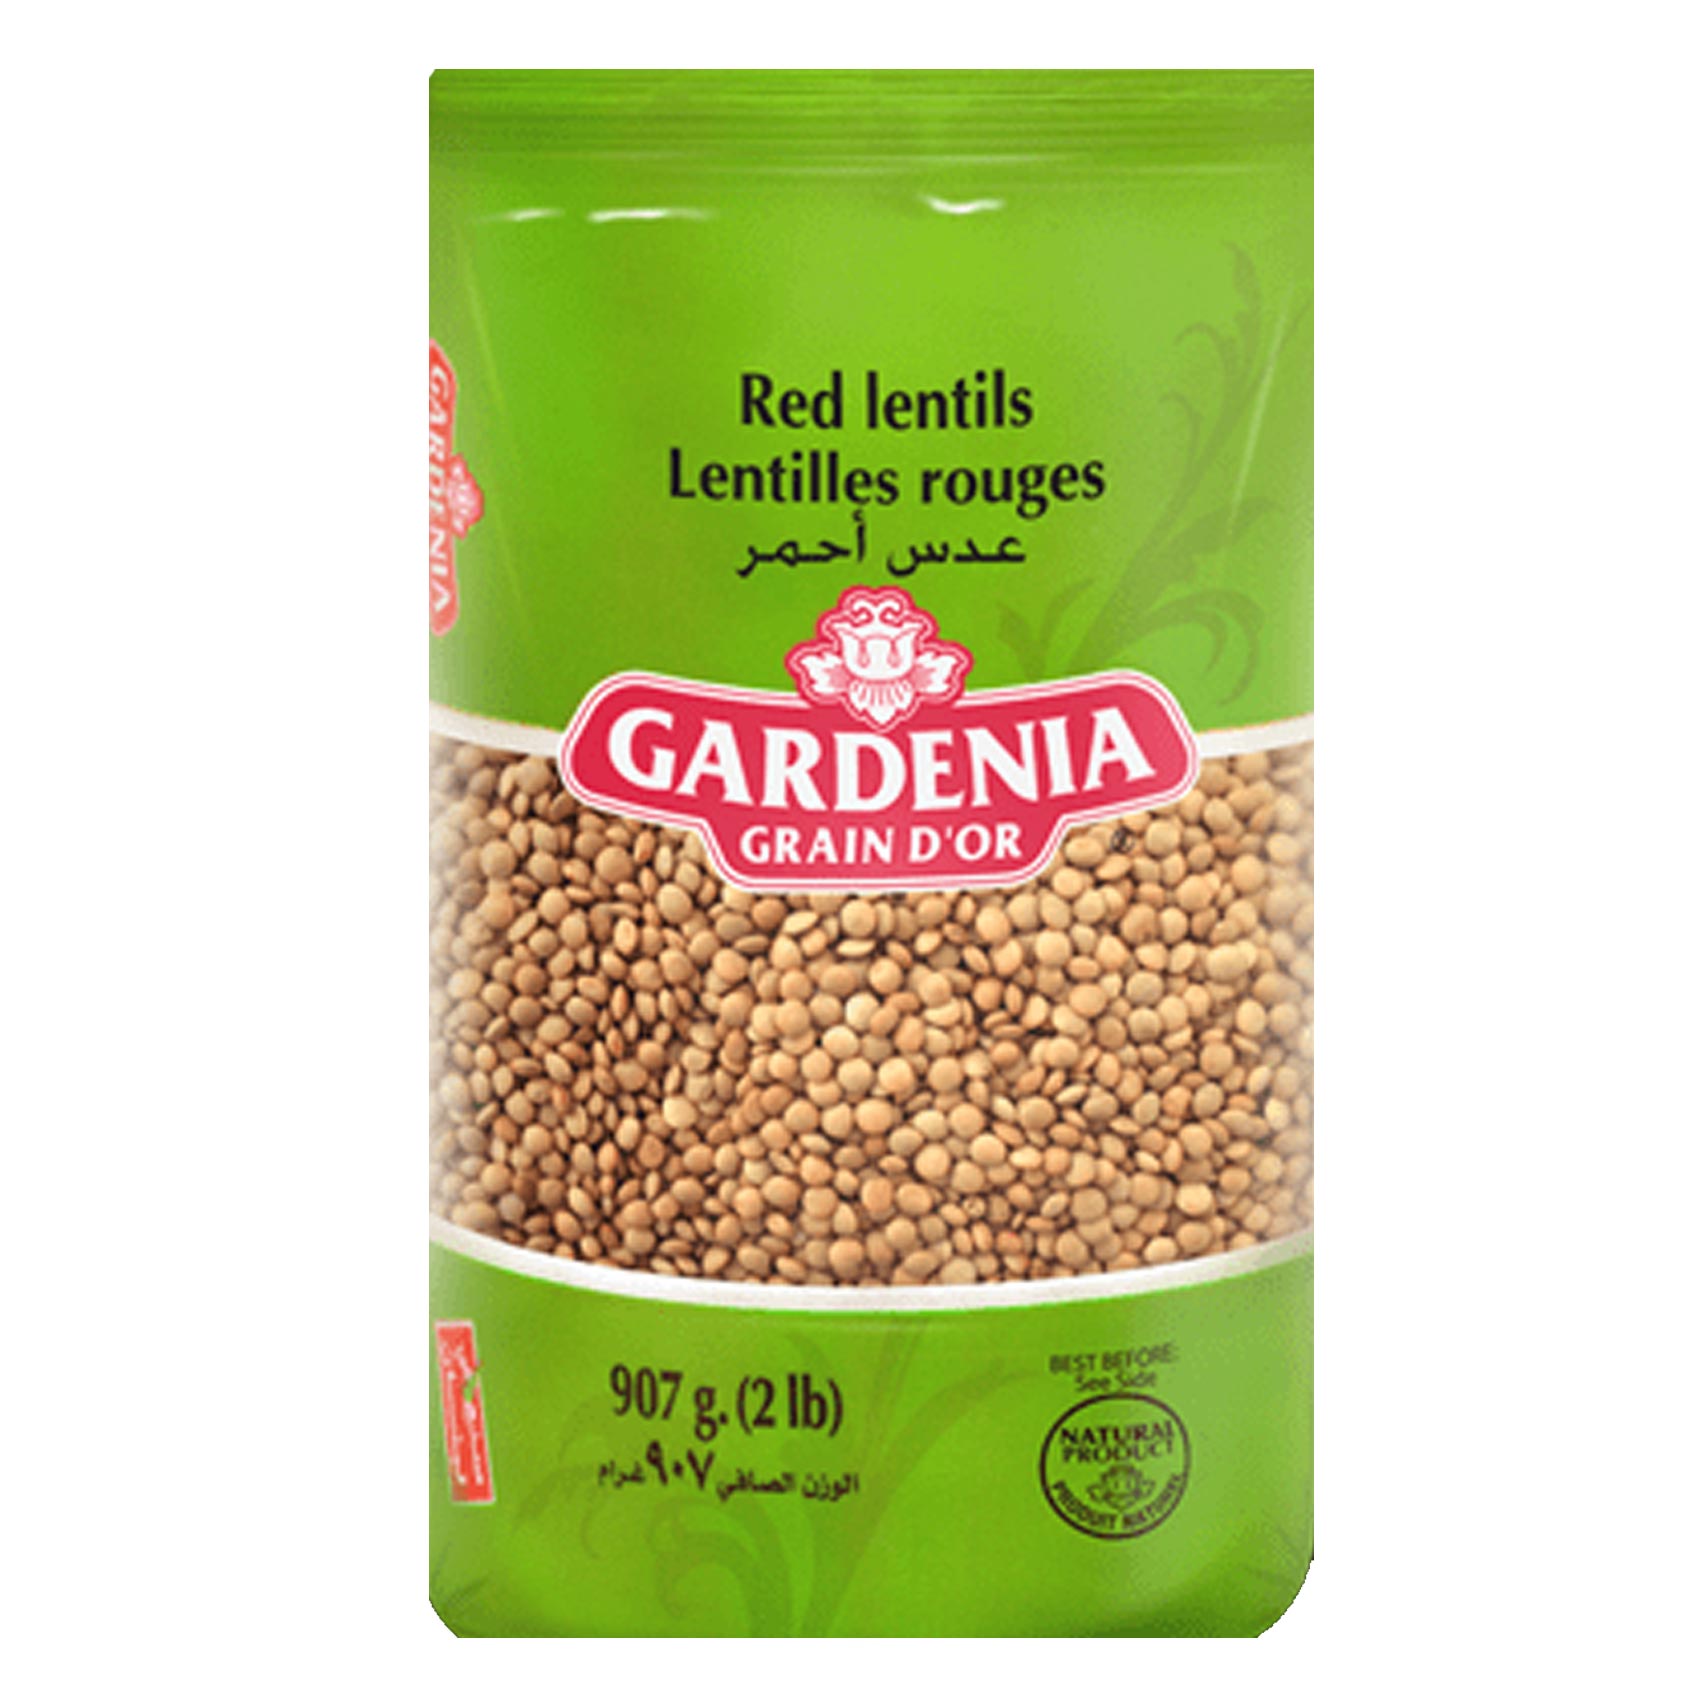 Gardenia Grain D Or Red Lentils 907GR